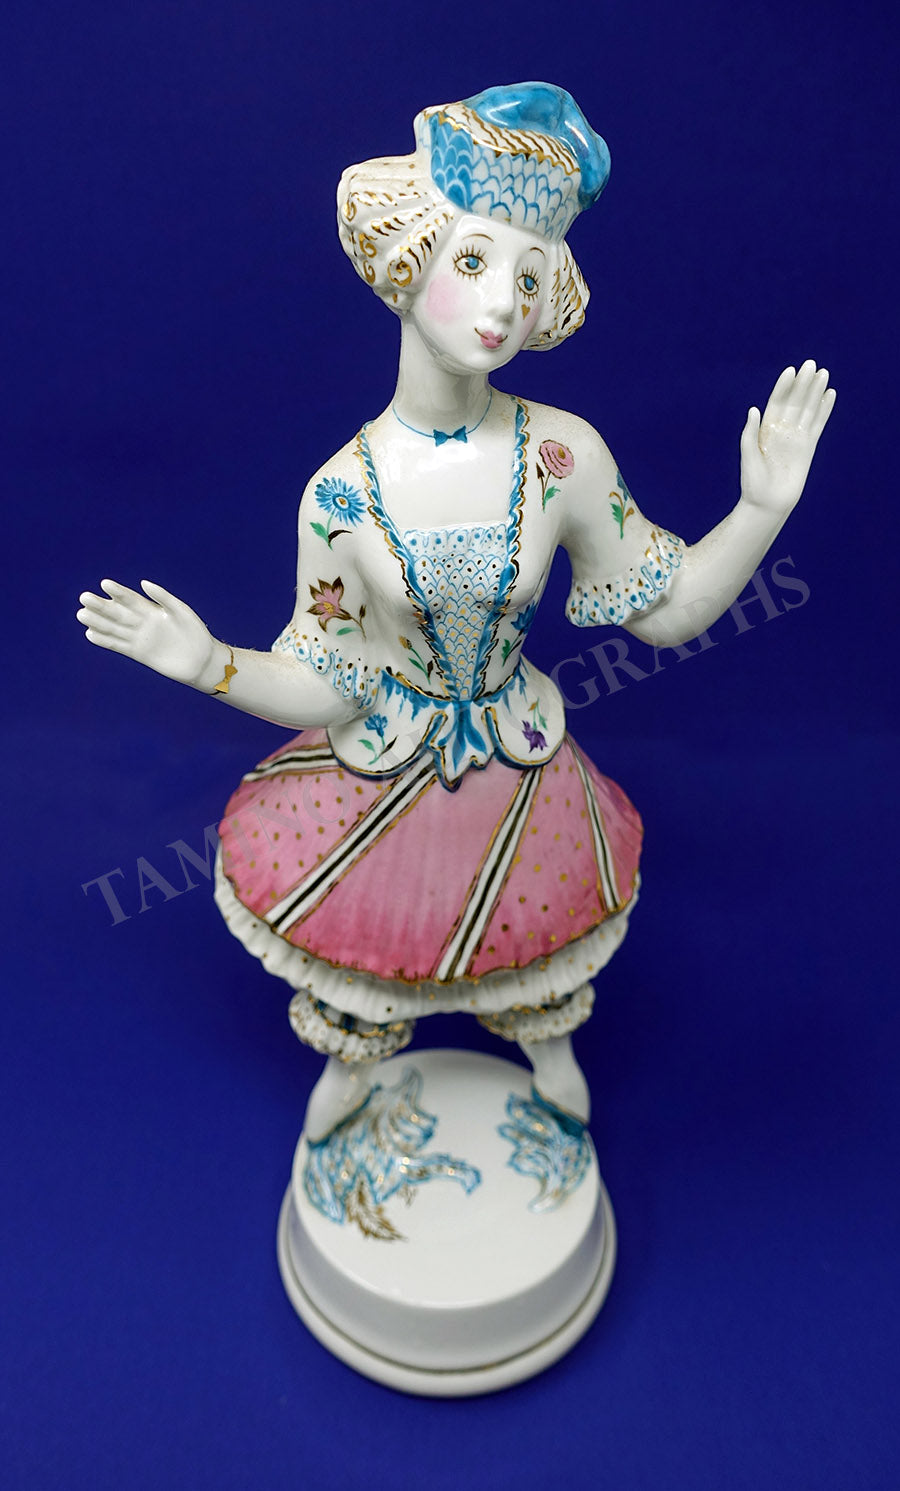 Karsavina, Tamara - Porcelain Figurine